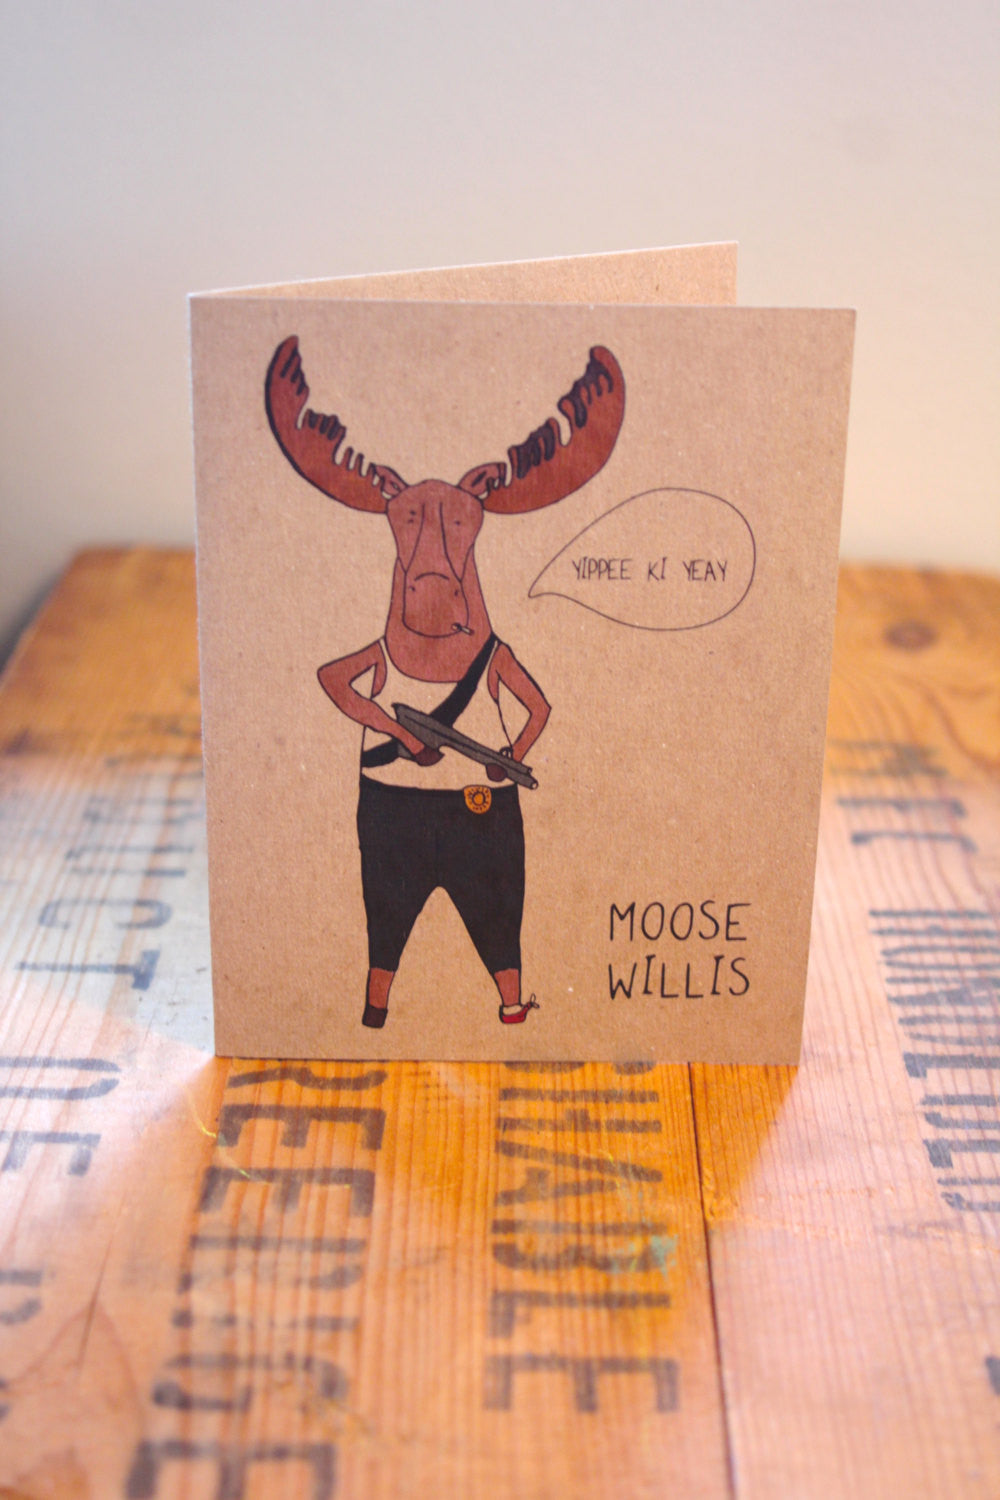 Moose Willis greeting card